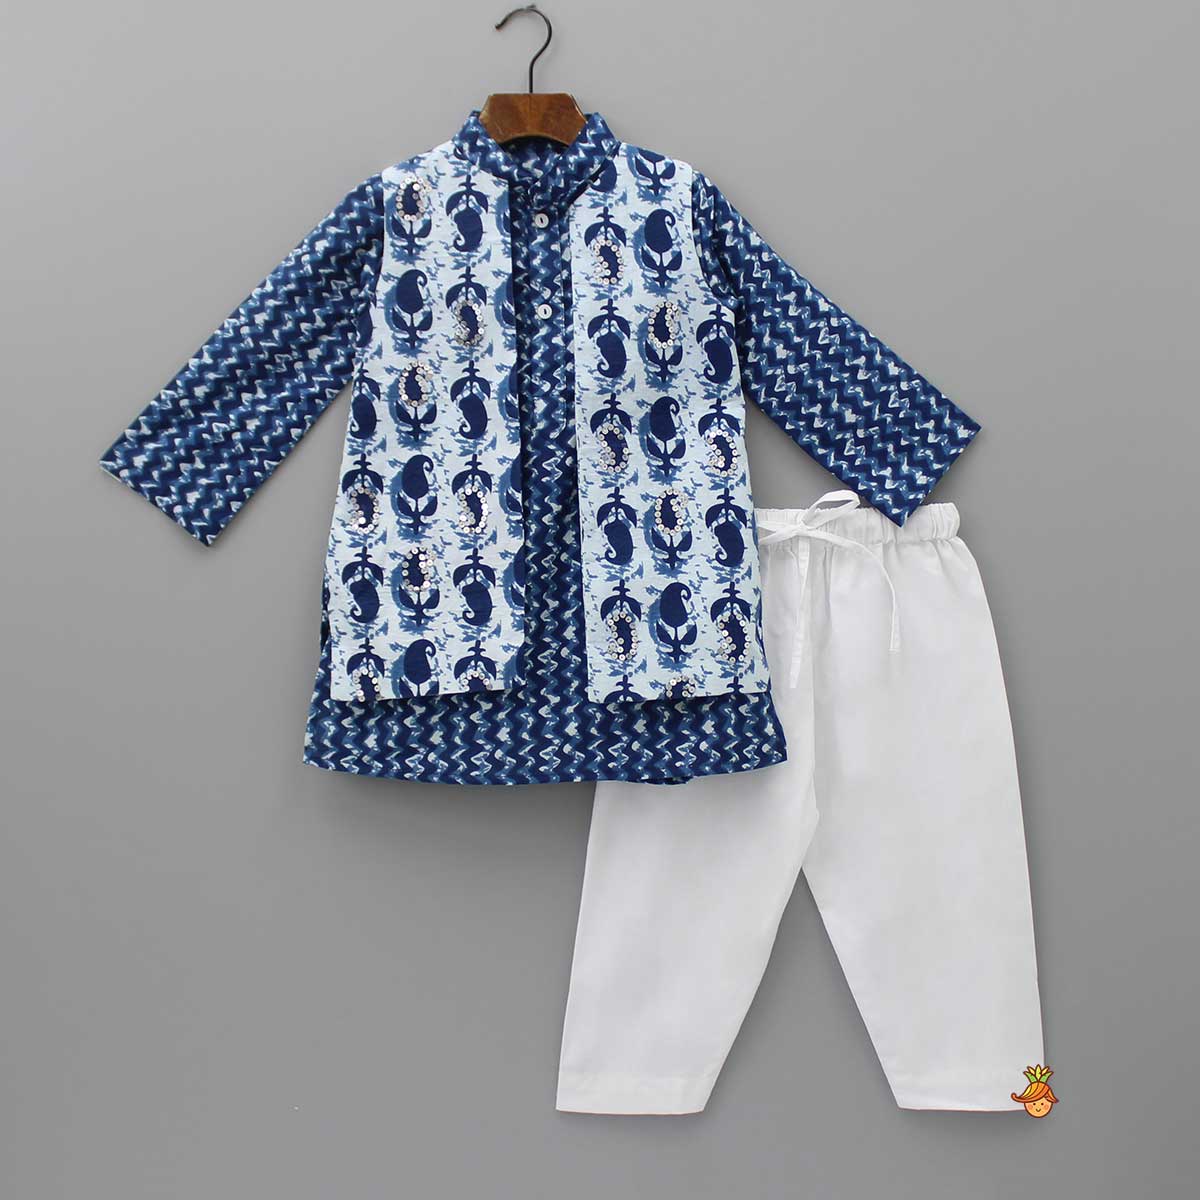 Chevron Printed Cotton Kurta And Jacket With Pyjama